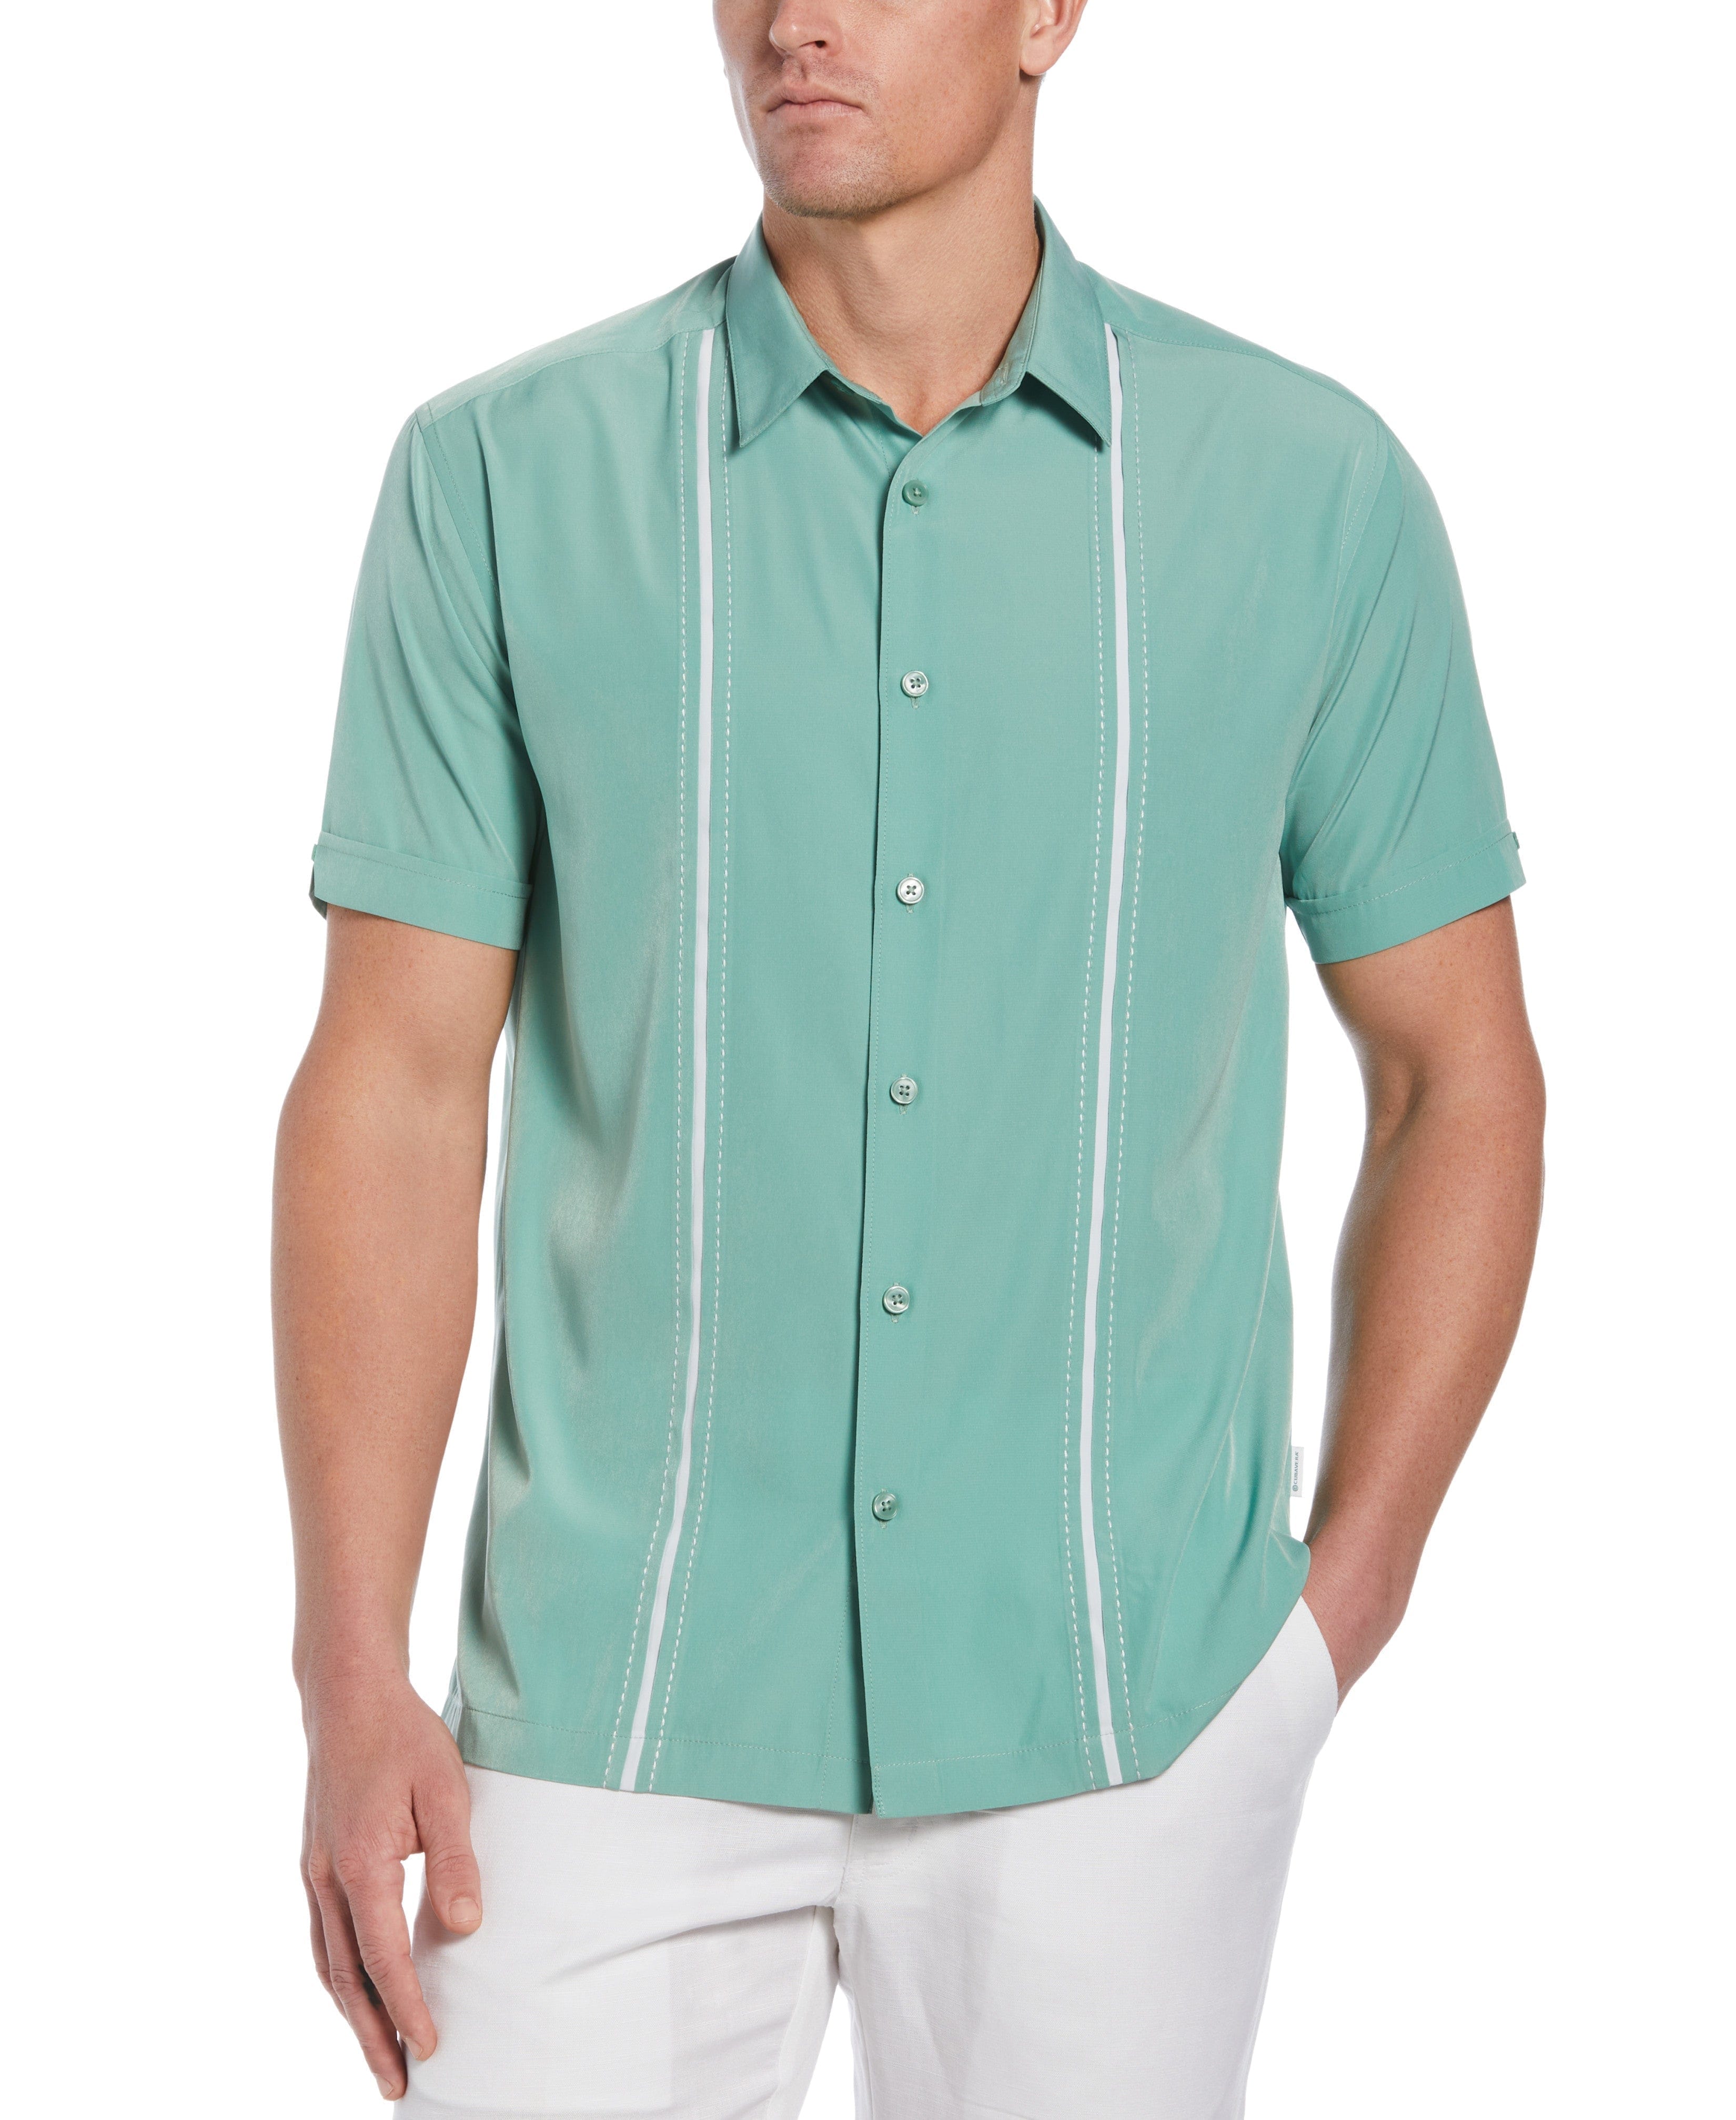 Panel Shirt - Contrast Stitching | Cubavera